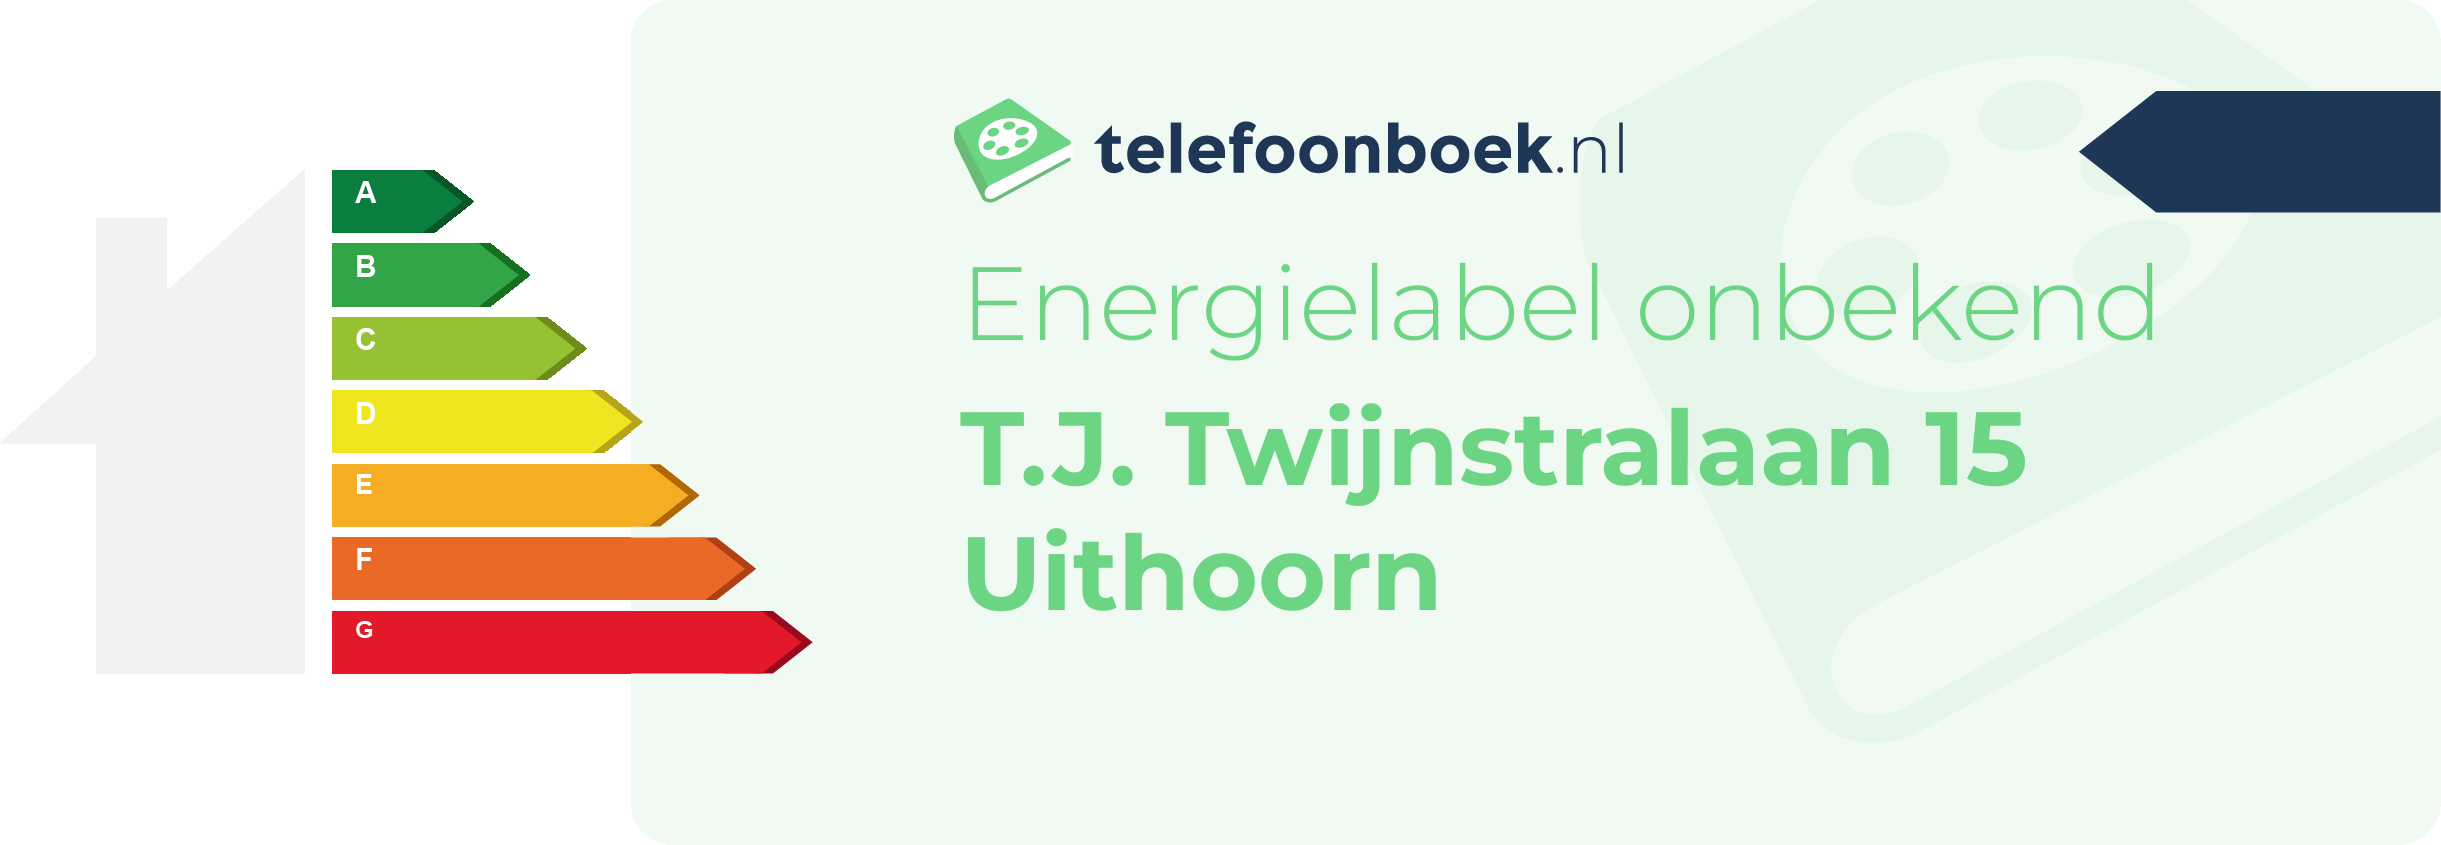 Energielabel T.J. Twijnstralaan 15 Uithoorn